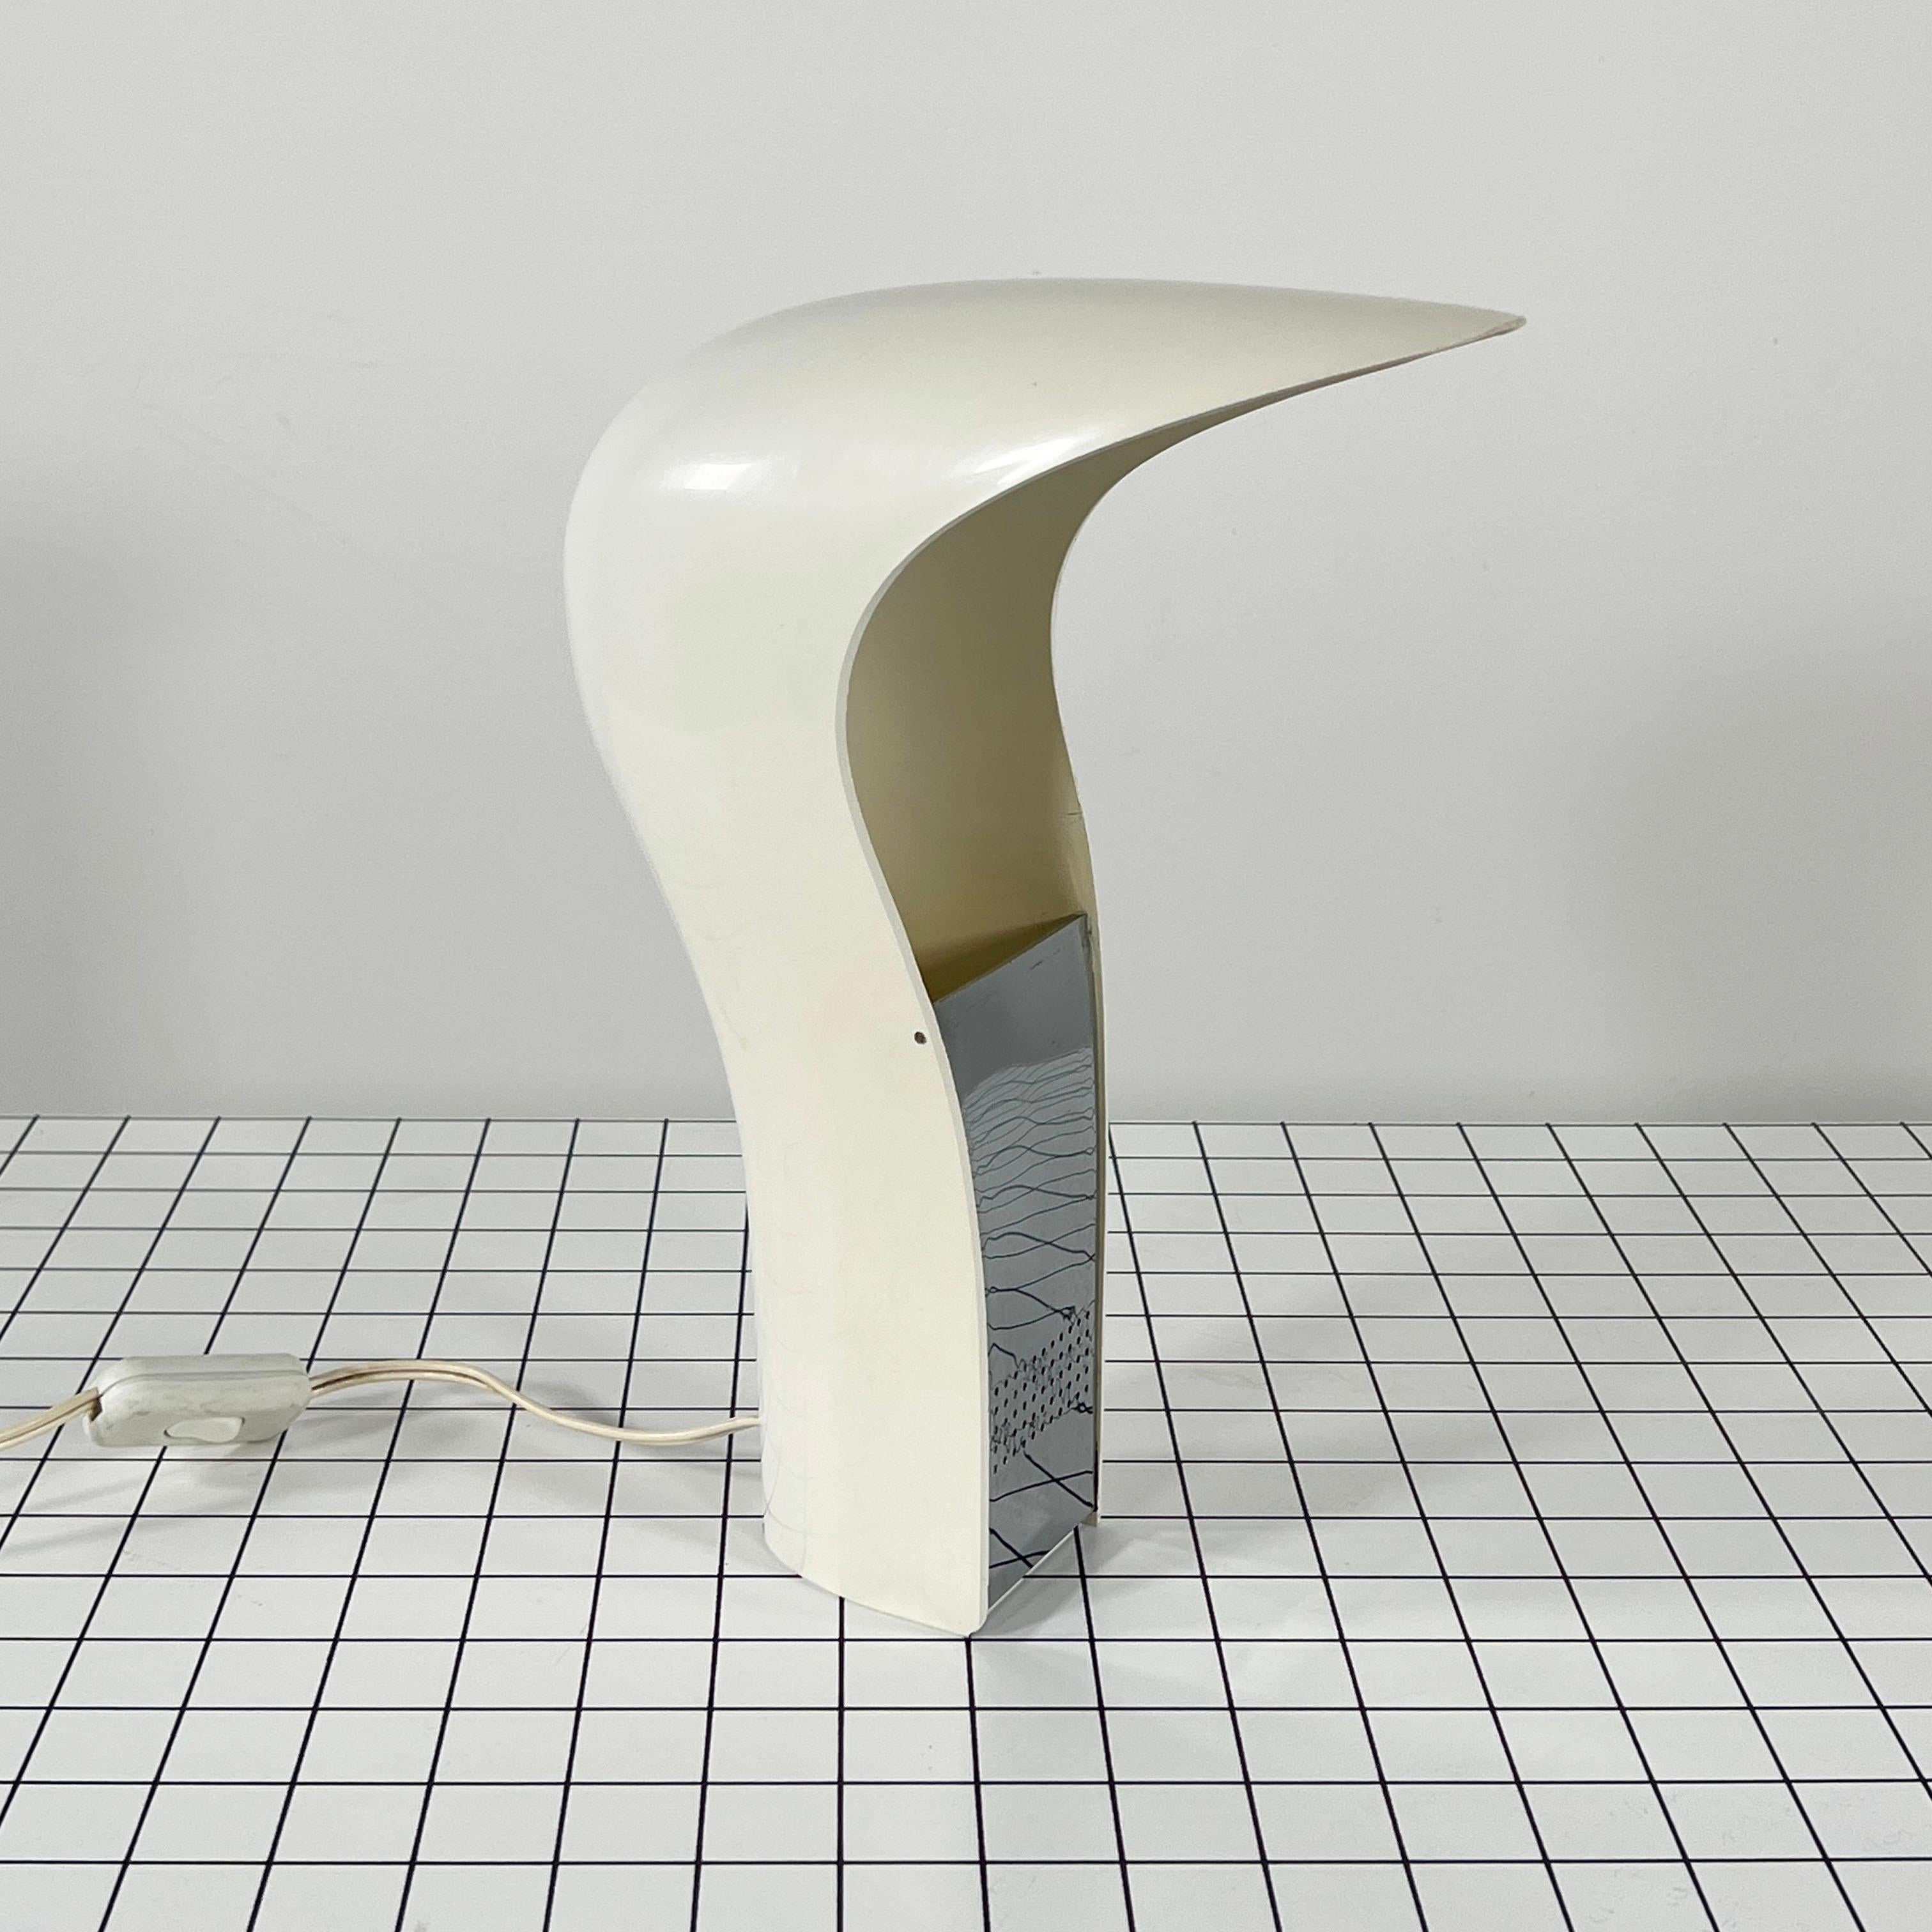 Late 20th Century White 'Pelota' Desk Lamp by Cesare Casati for Lamperti Studio D.A., Italy, 1970s For Sale